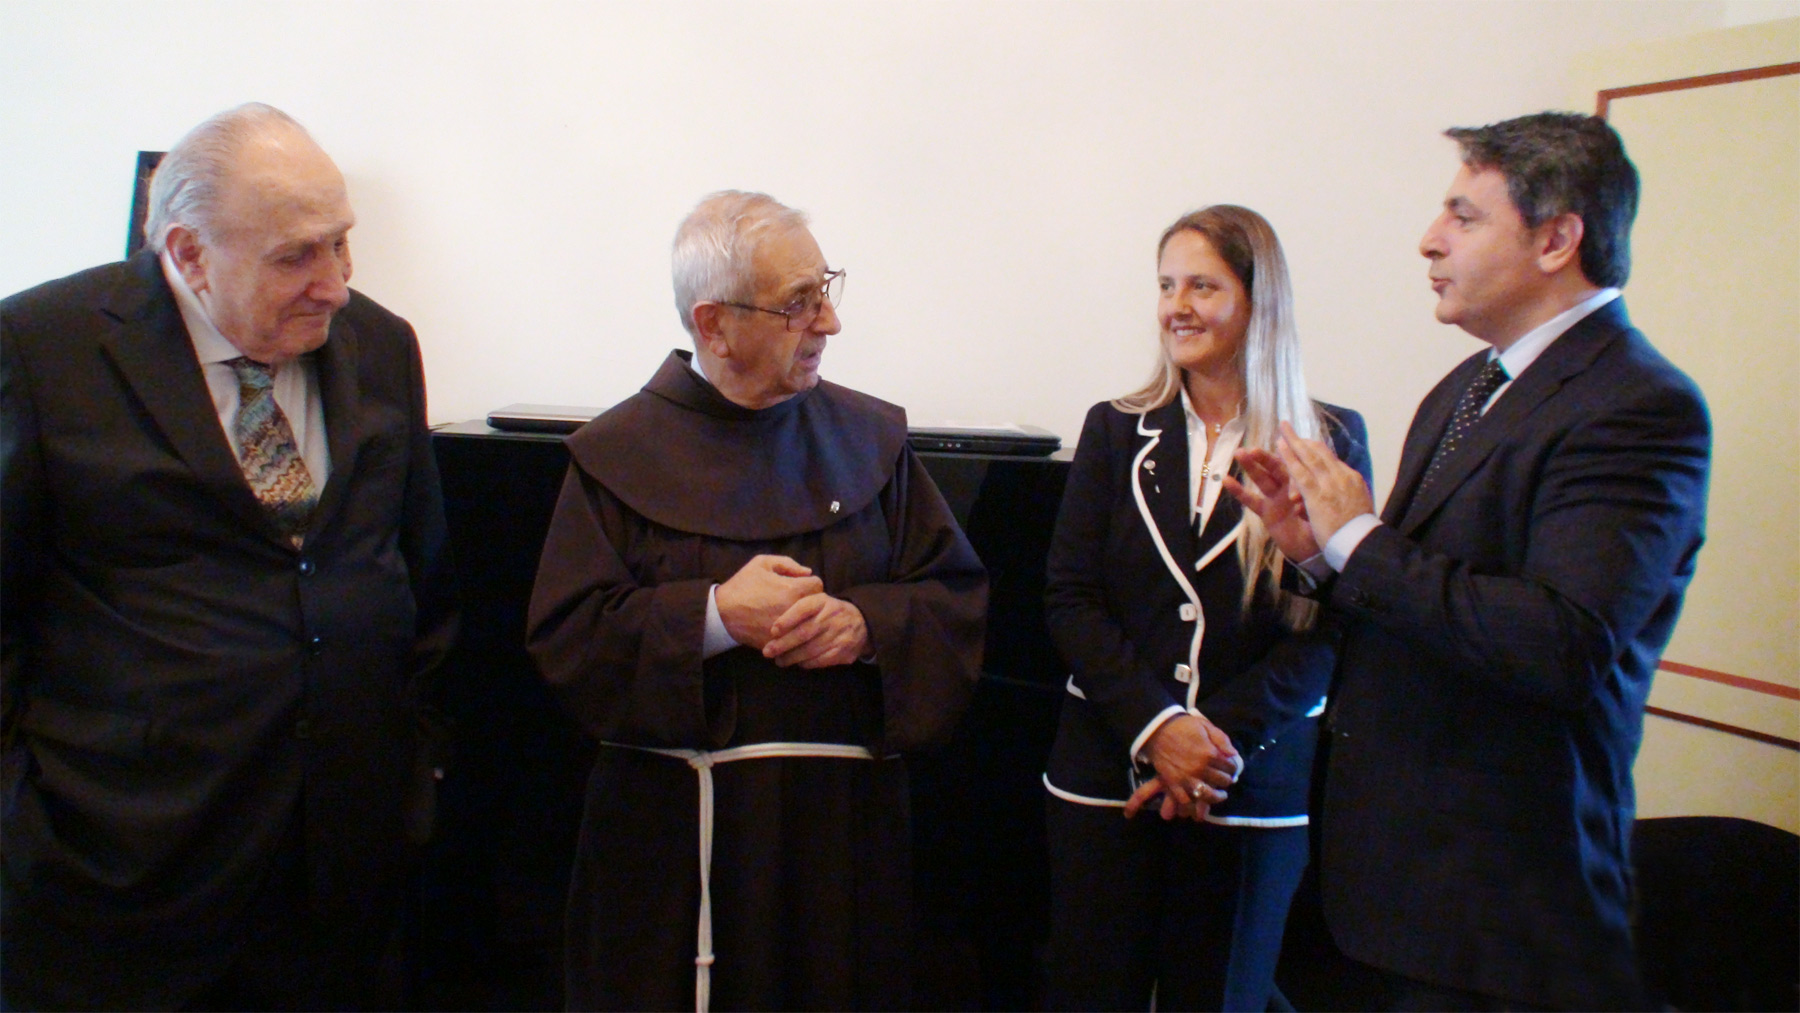 Assisi - Fabio Gallo, Viviana Normando e Fausto Cantarelli in occasione della Consegna Carta della Pace a Padre GianMariaPolidoro